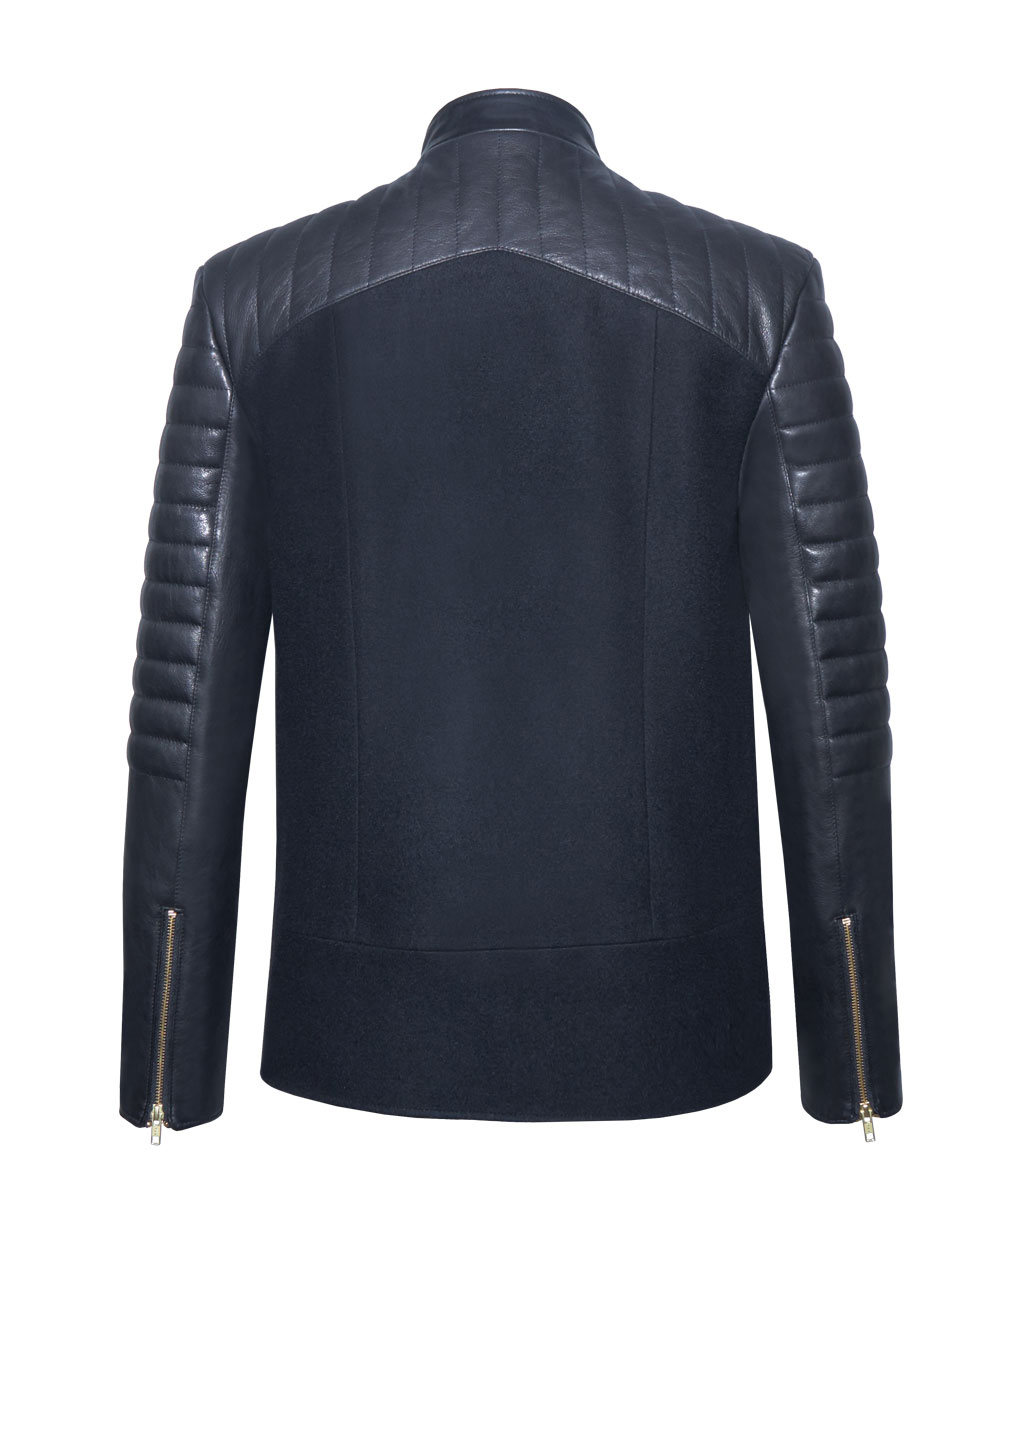 Übergangsjacke aus Kaschmir und Leder für Herren in Farbe schwarz. Ein Modell von Designer Stefan Eckert aus Hamburg